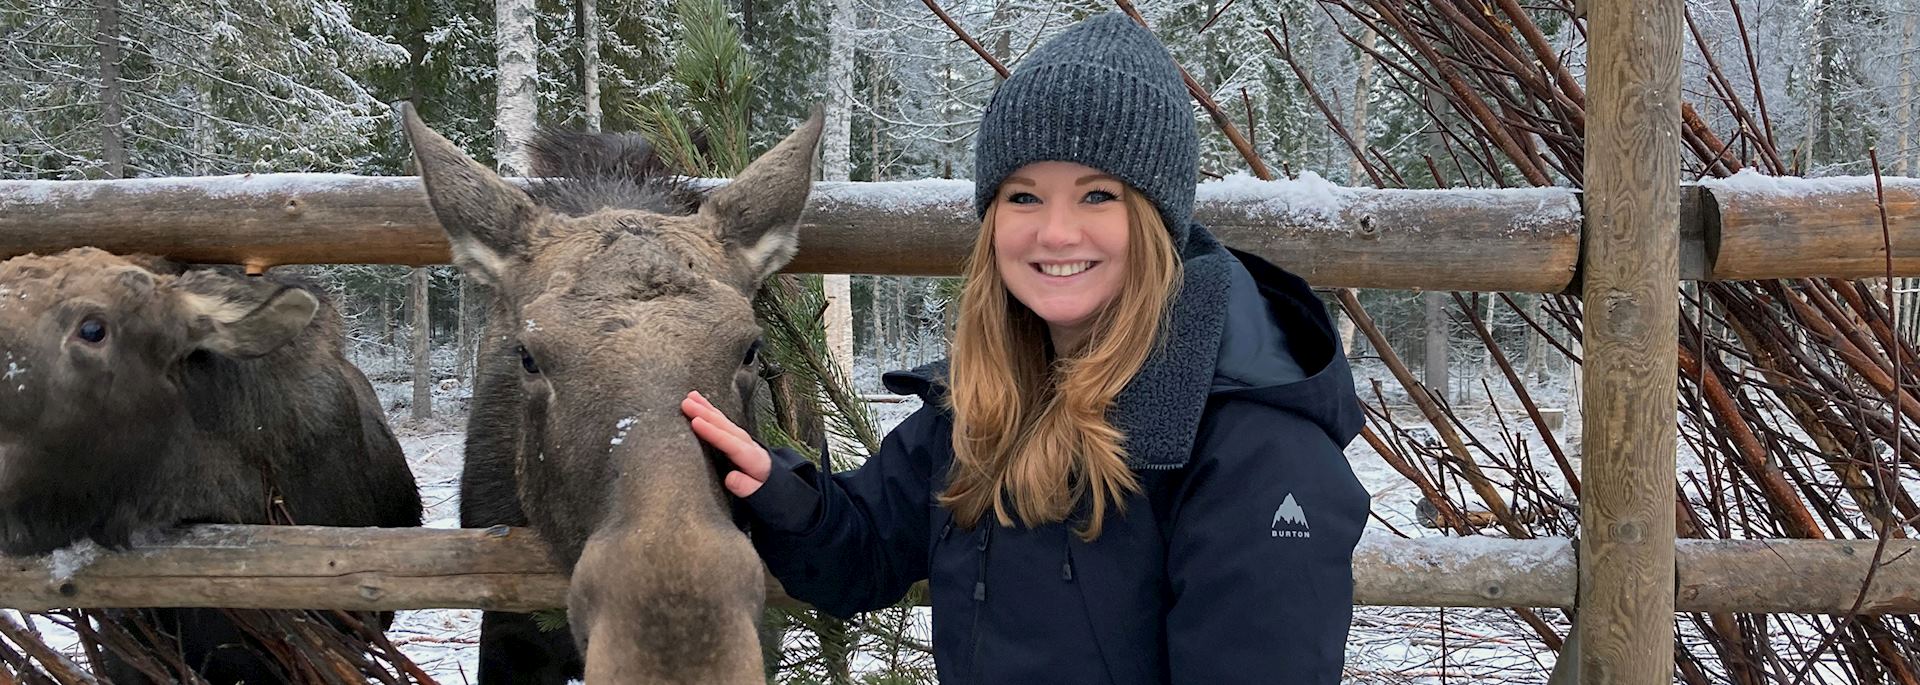 Aislyn feeding a moose in Sweden